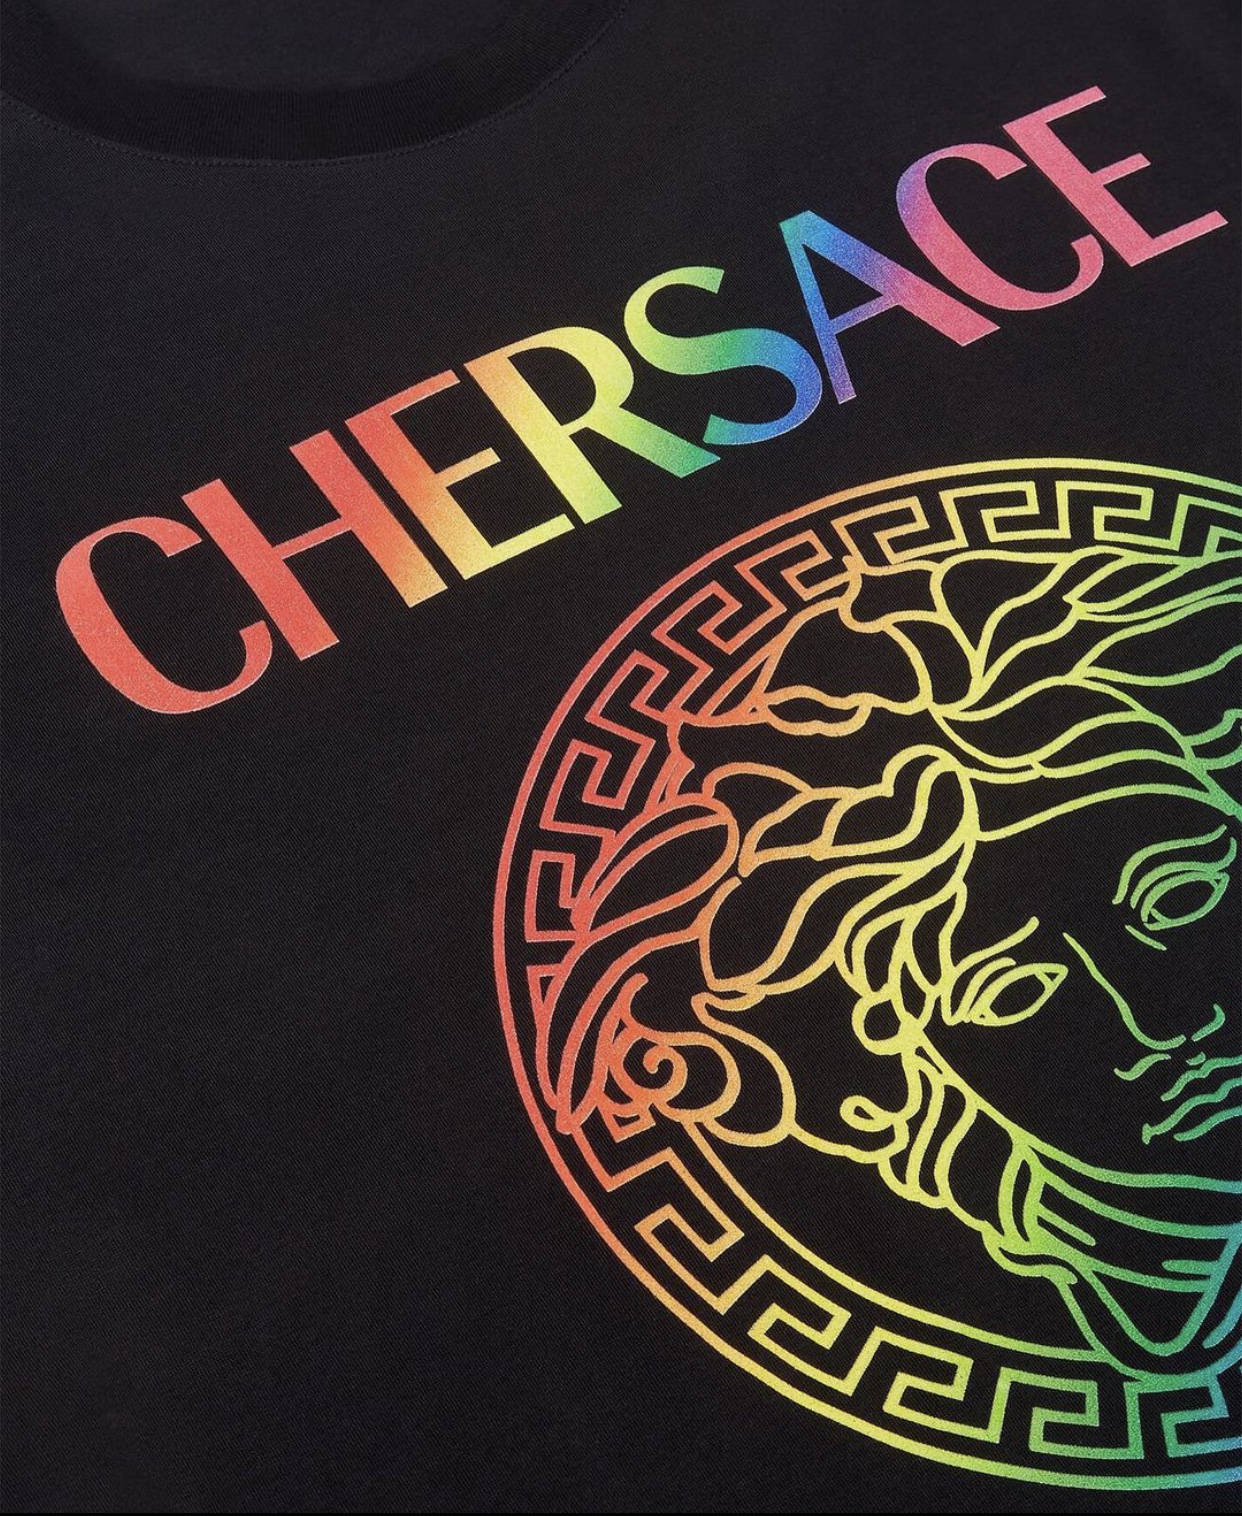 CHERSACE: Cher e Versace se unem em prol da comunidade LGBTQIA+